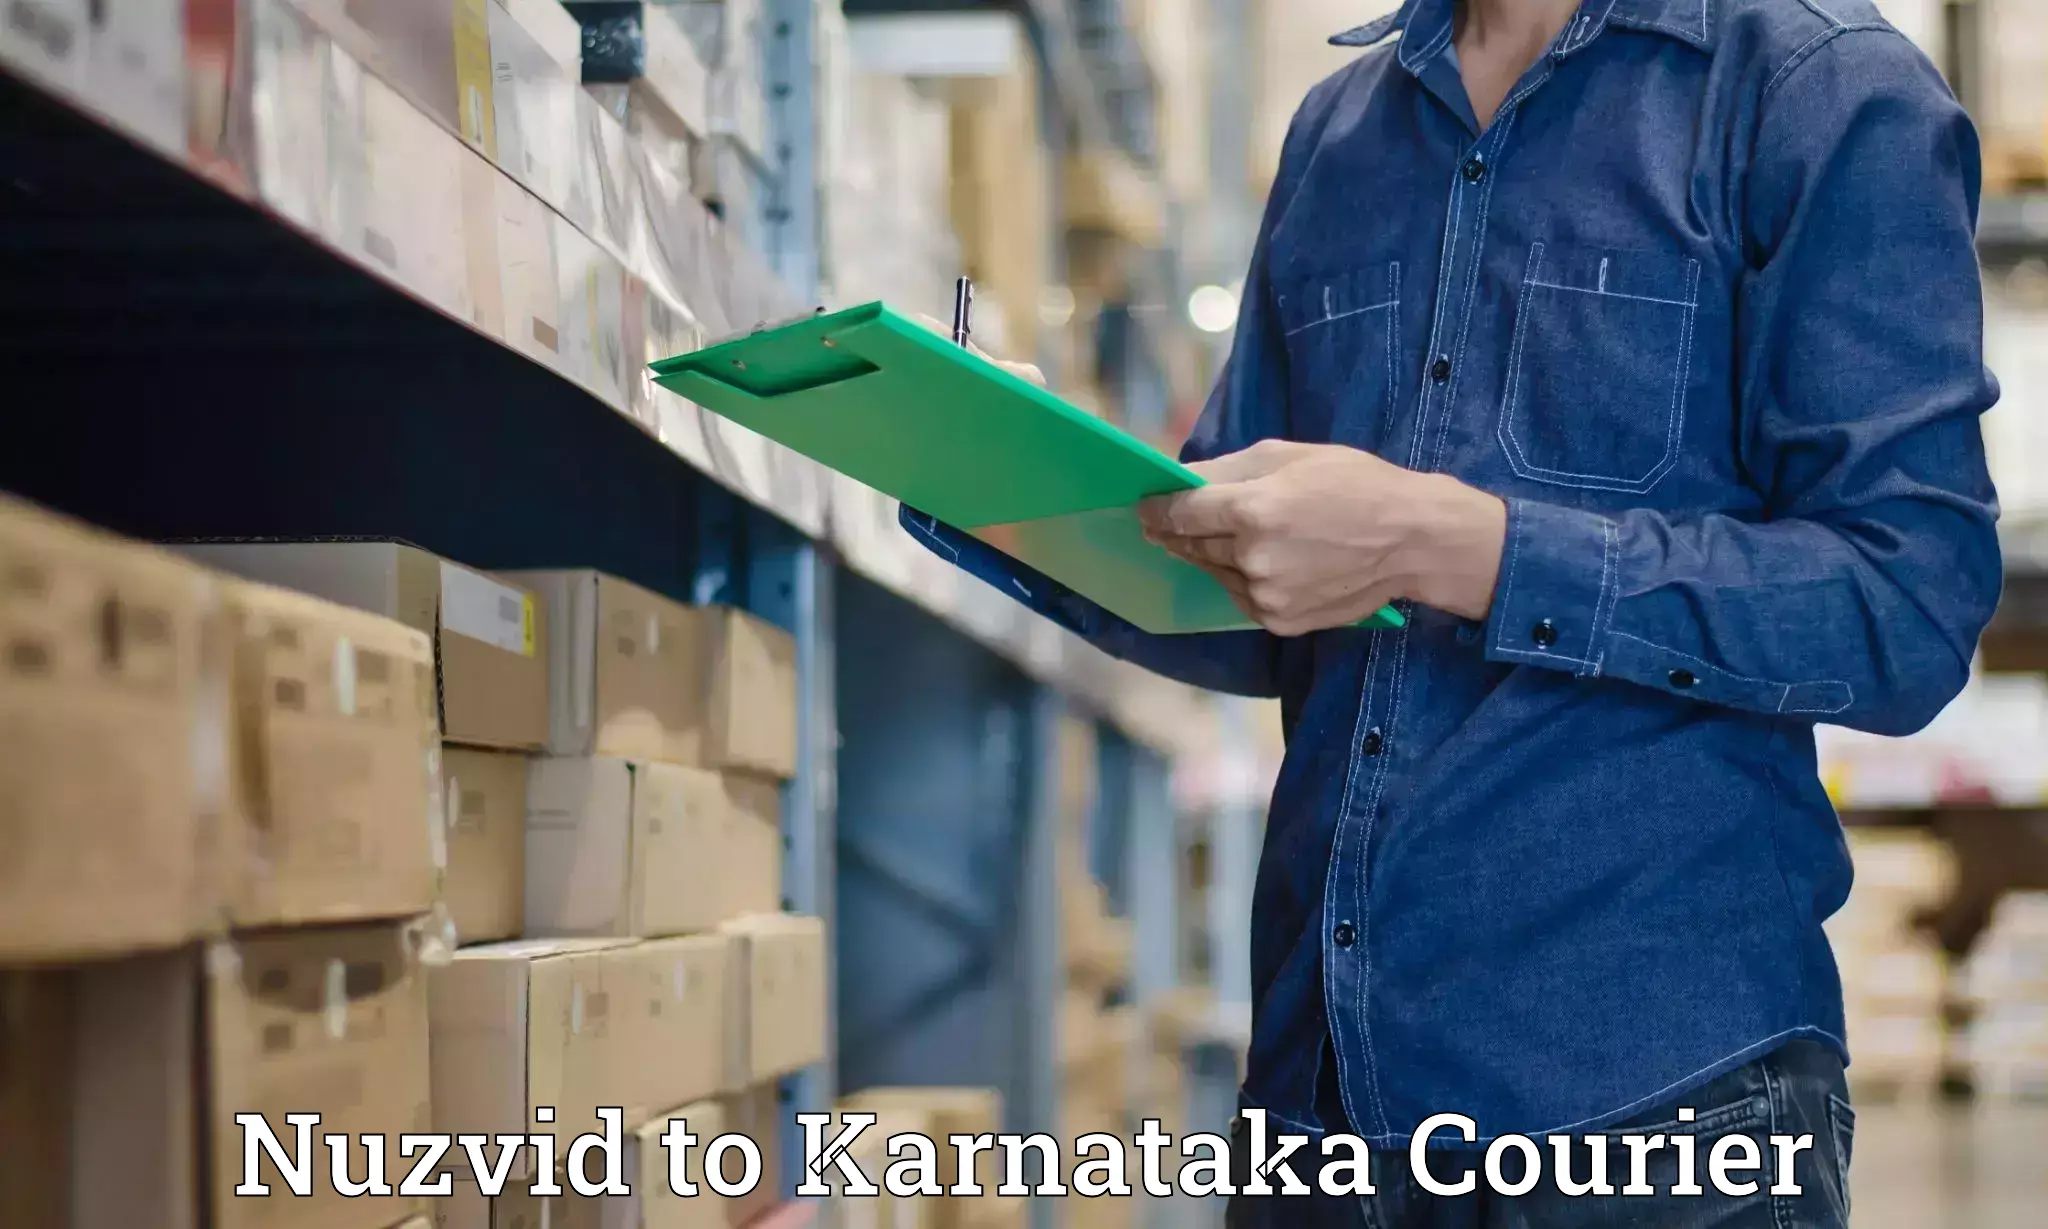 Efficient parcel service Nuzvid to Surathkal